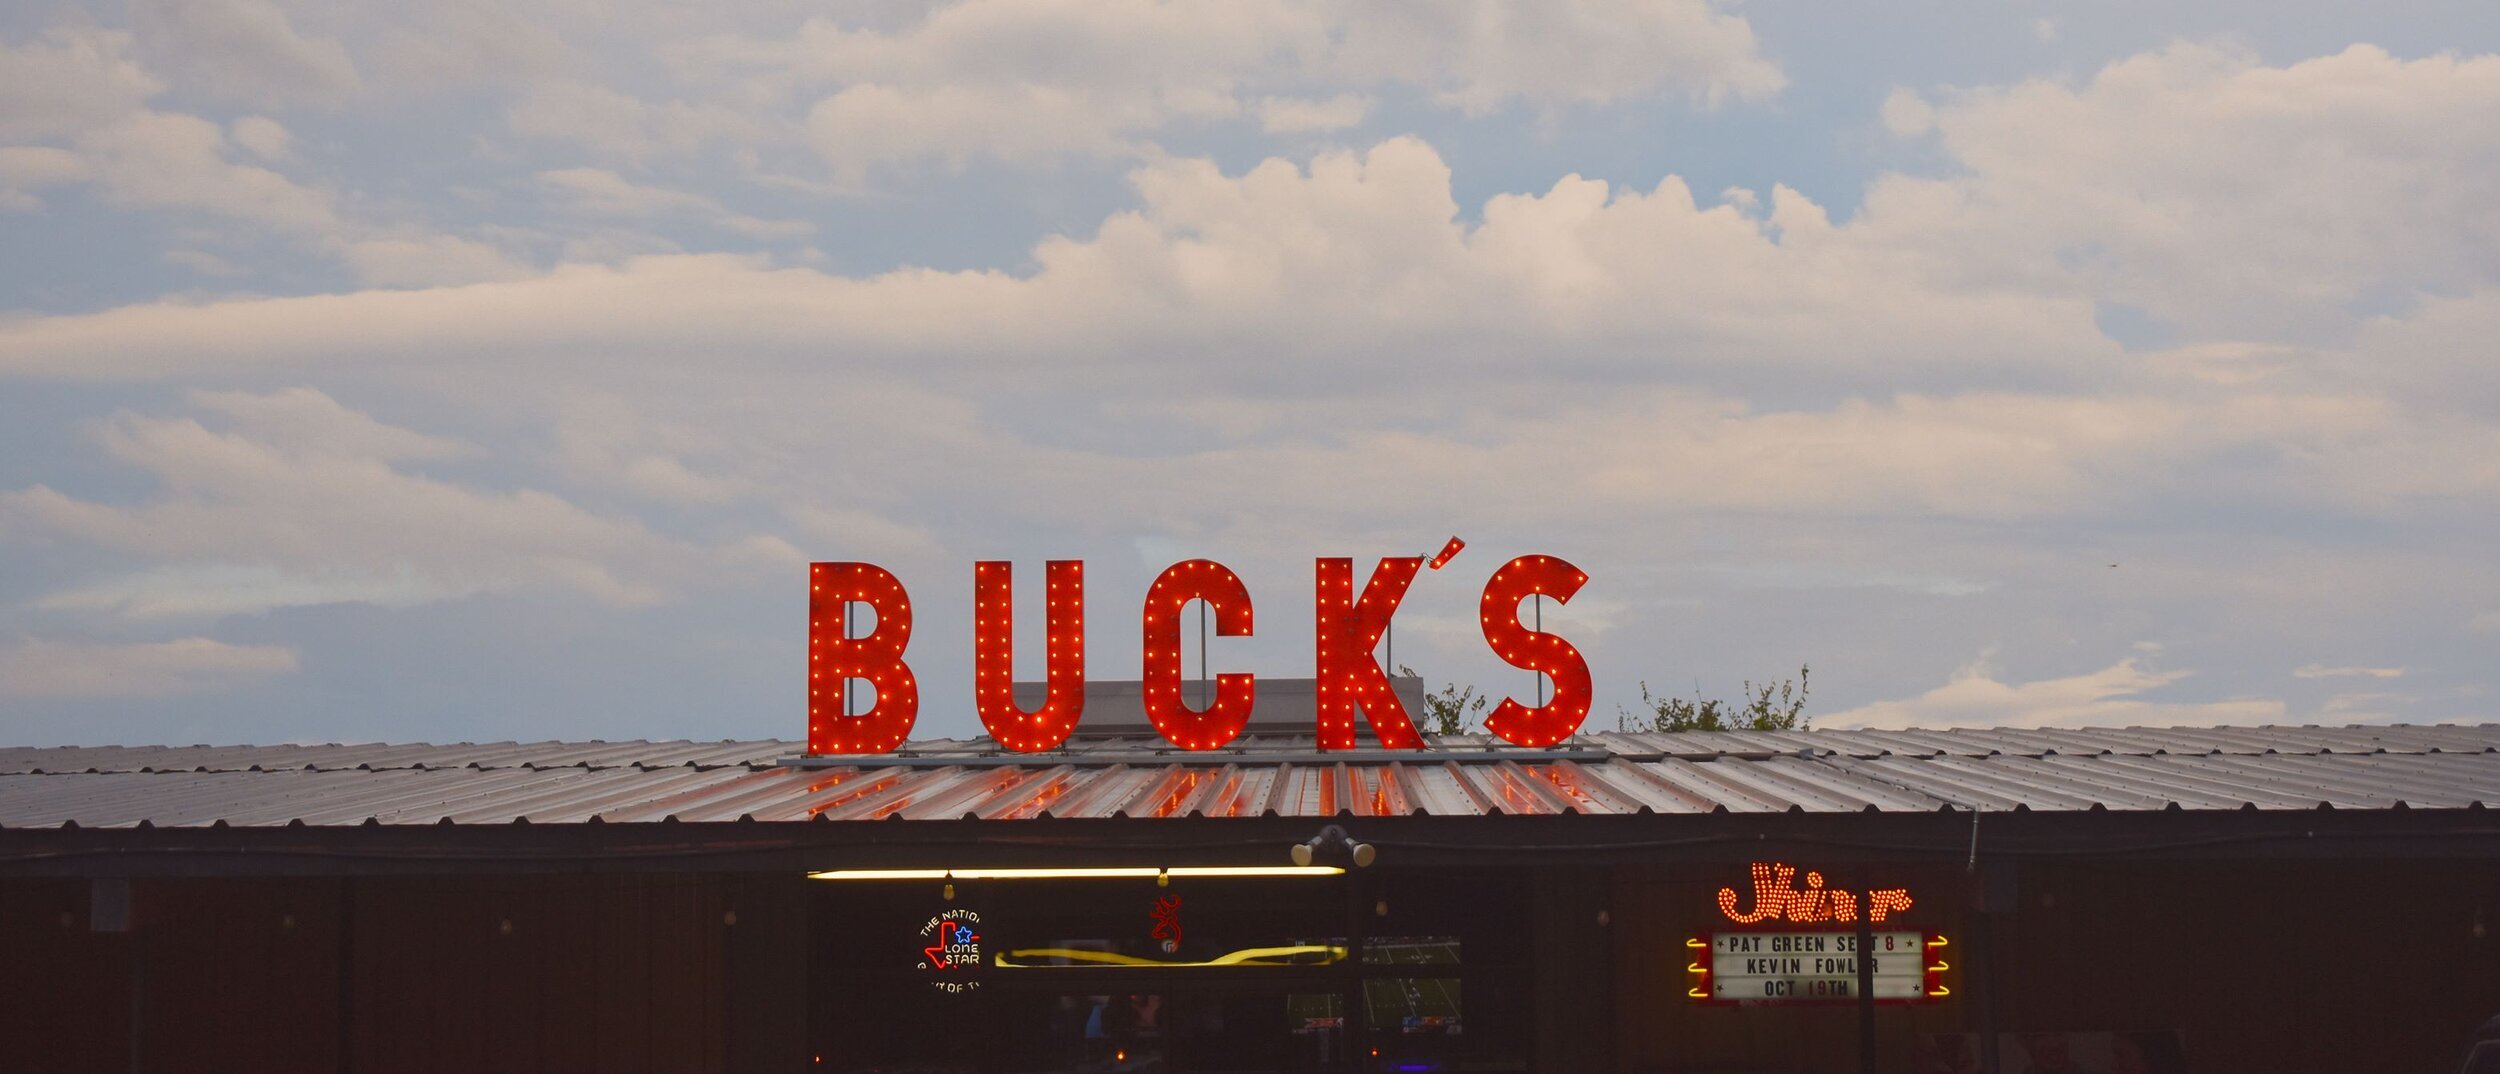 Bucks Backyard Live Music Buda, TX